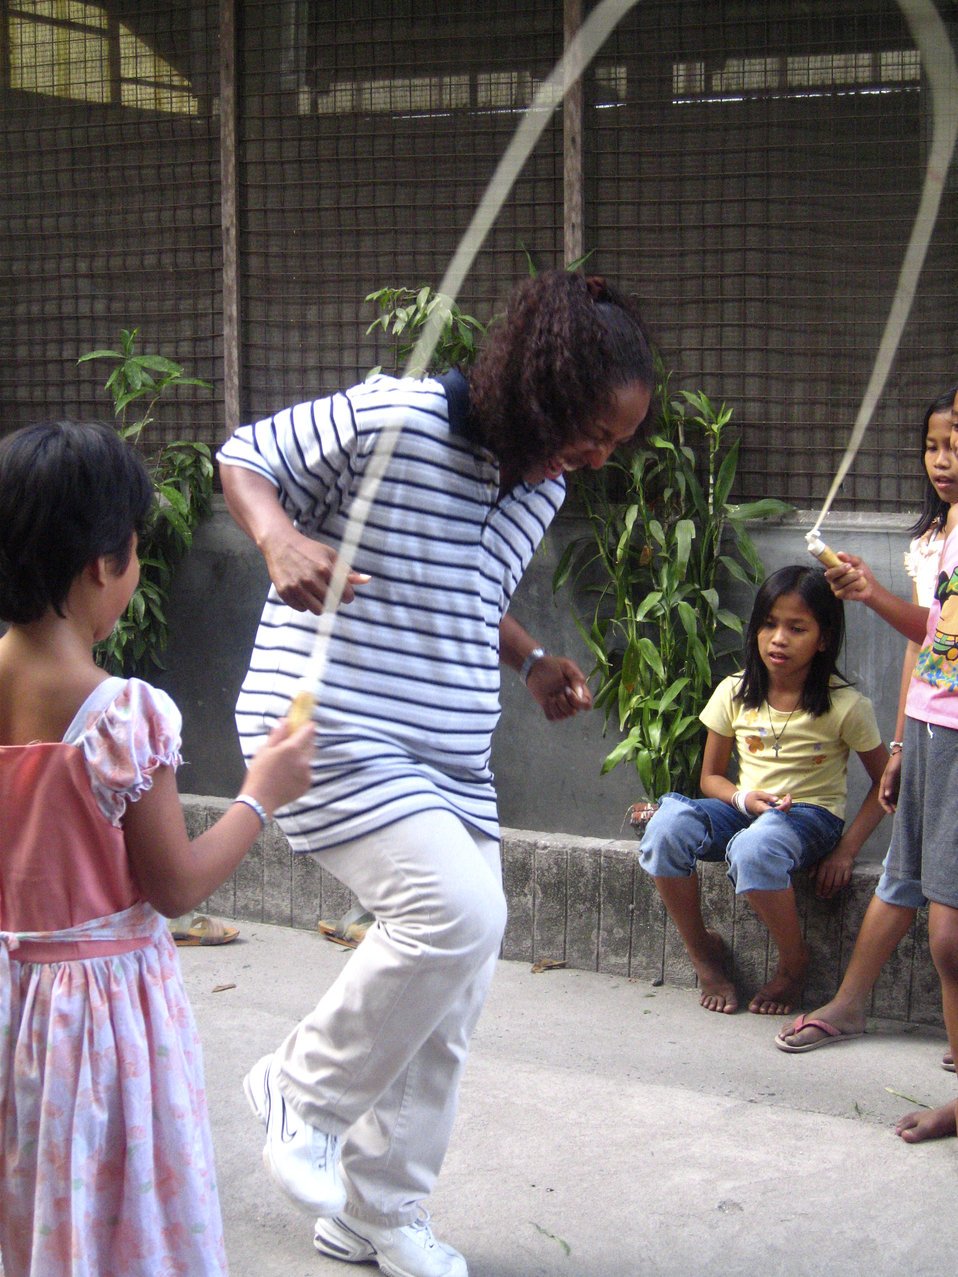 Mujer jugando con niños. | Imagen: Public Domain Files